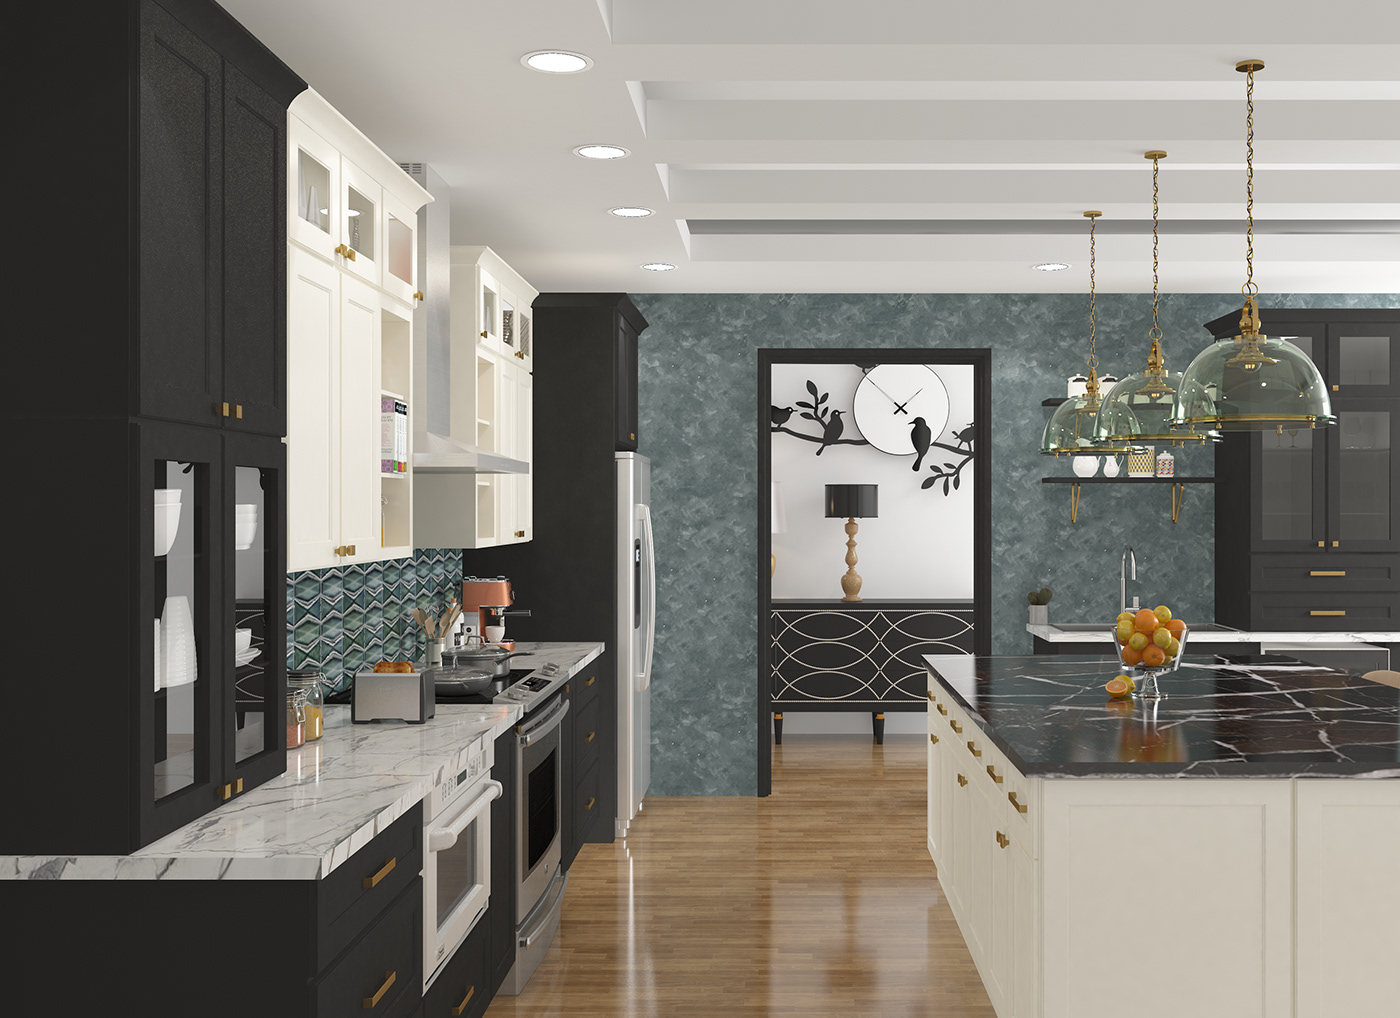 3D architecture Interior kitchen Render visualization vray